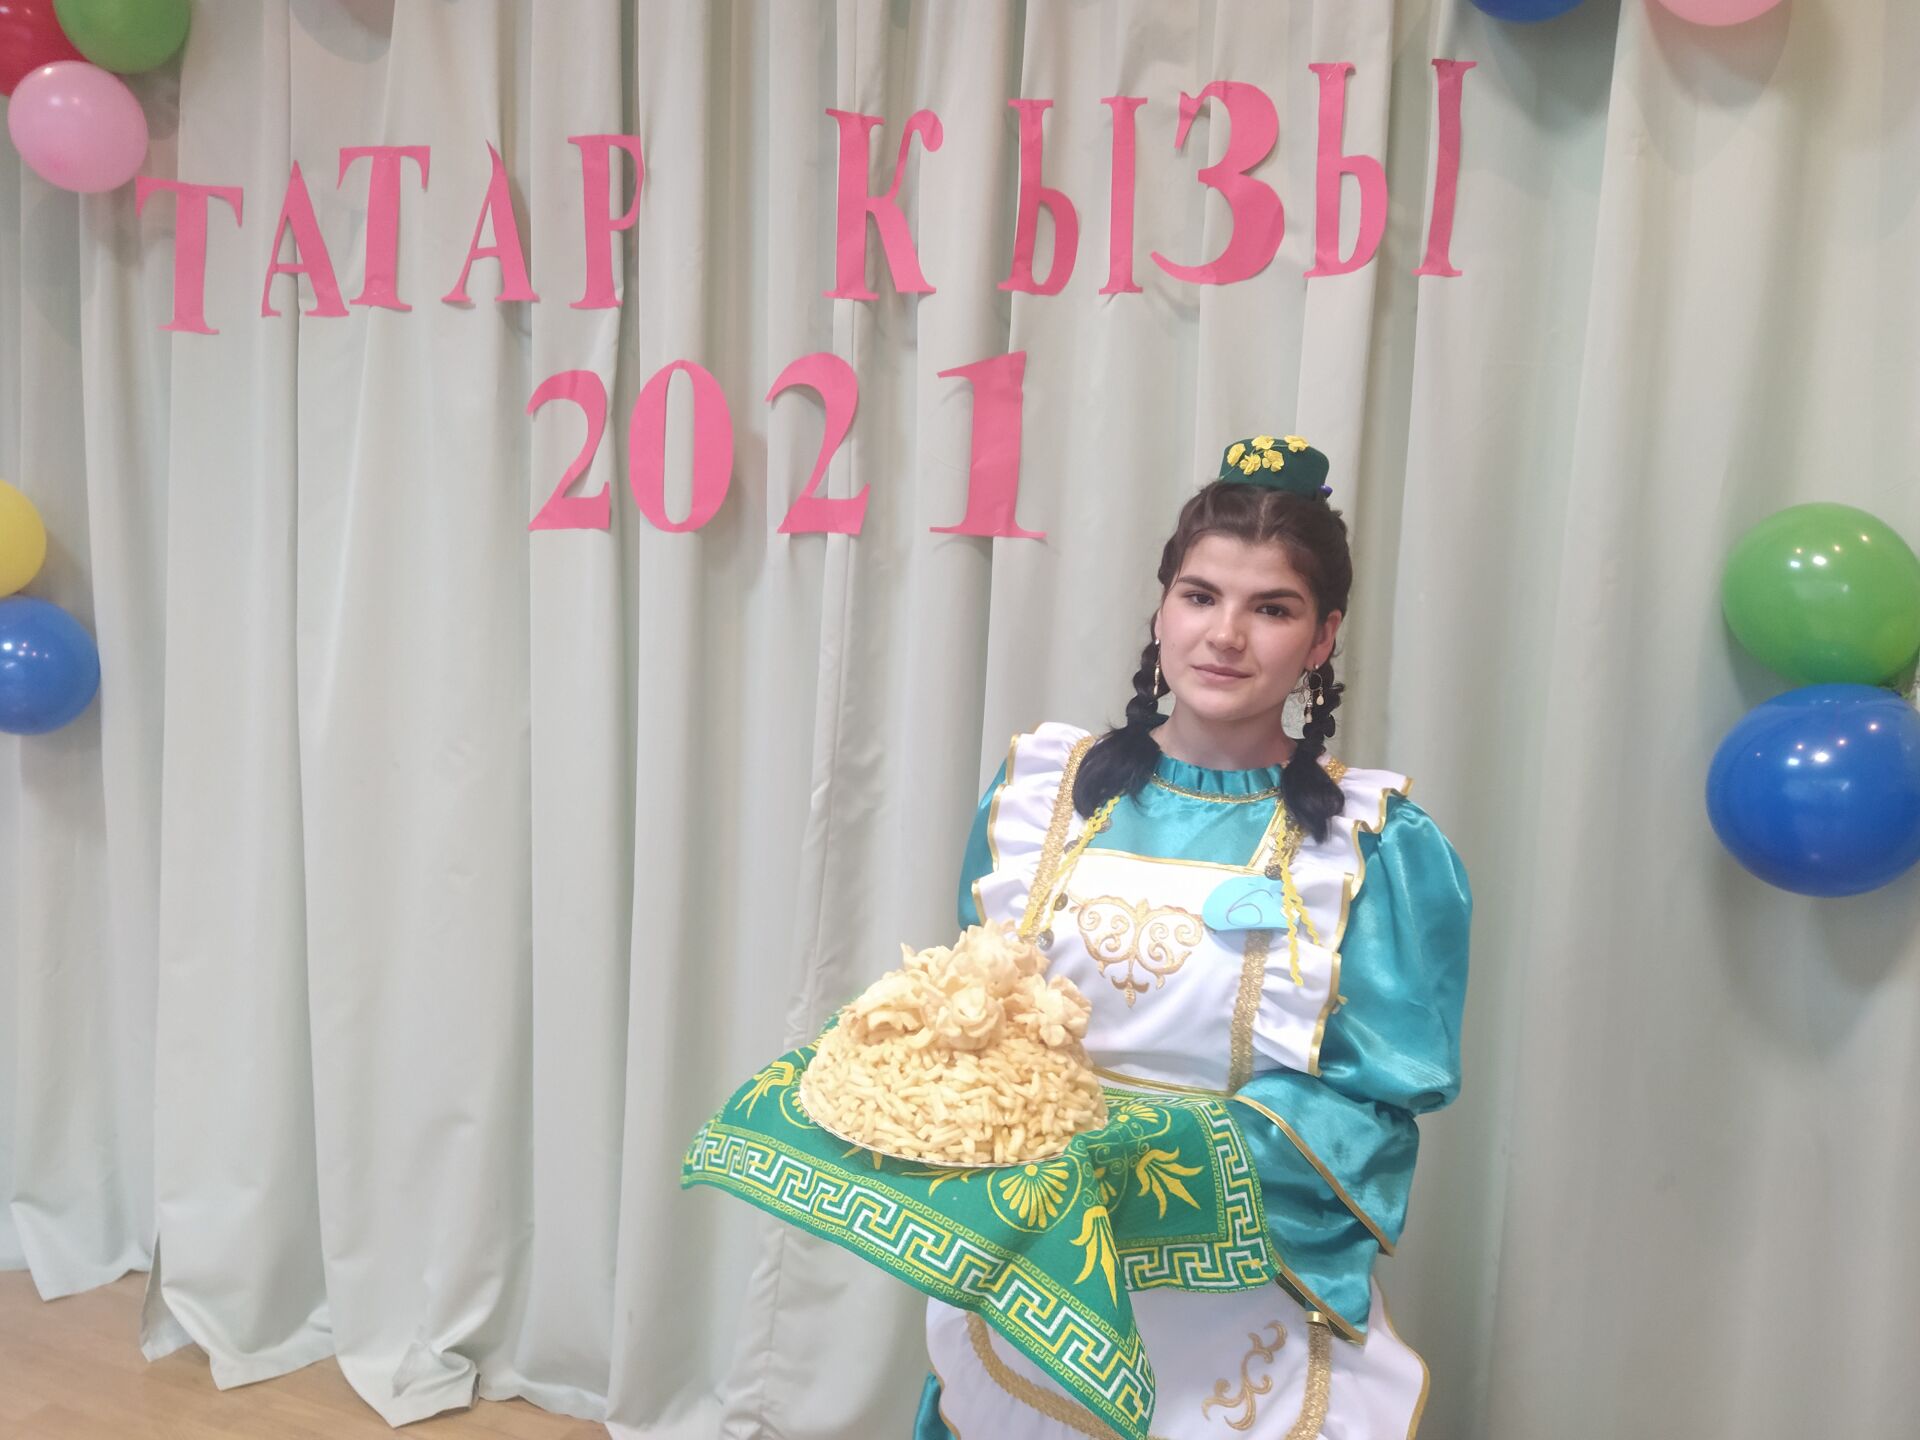 Районный конкурс «Татар кызы – 2021» прошёл сегодня в Камском Устье